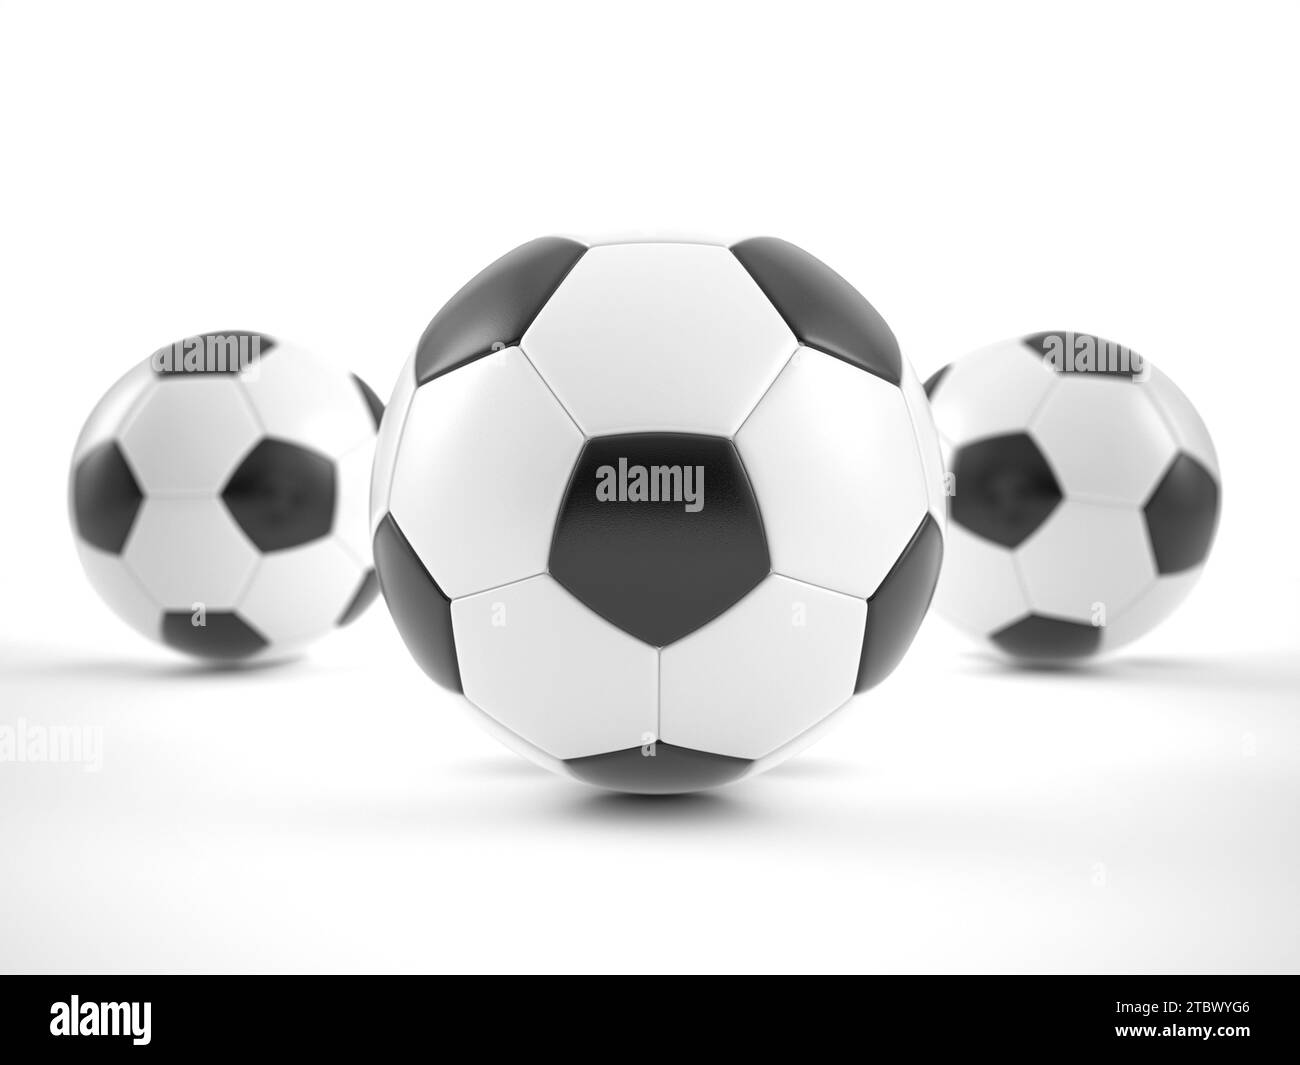 Fútboles De Los Balones De Fútbol 3D - Fondo Stock de ilustración